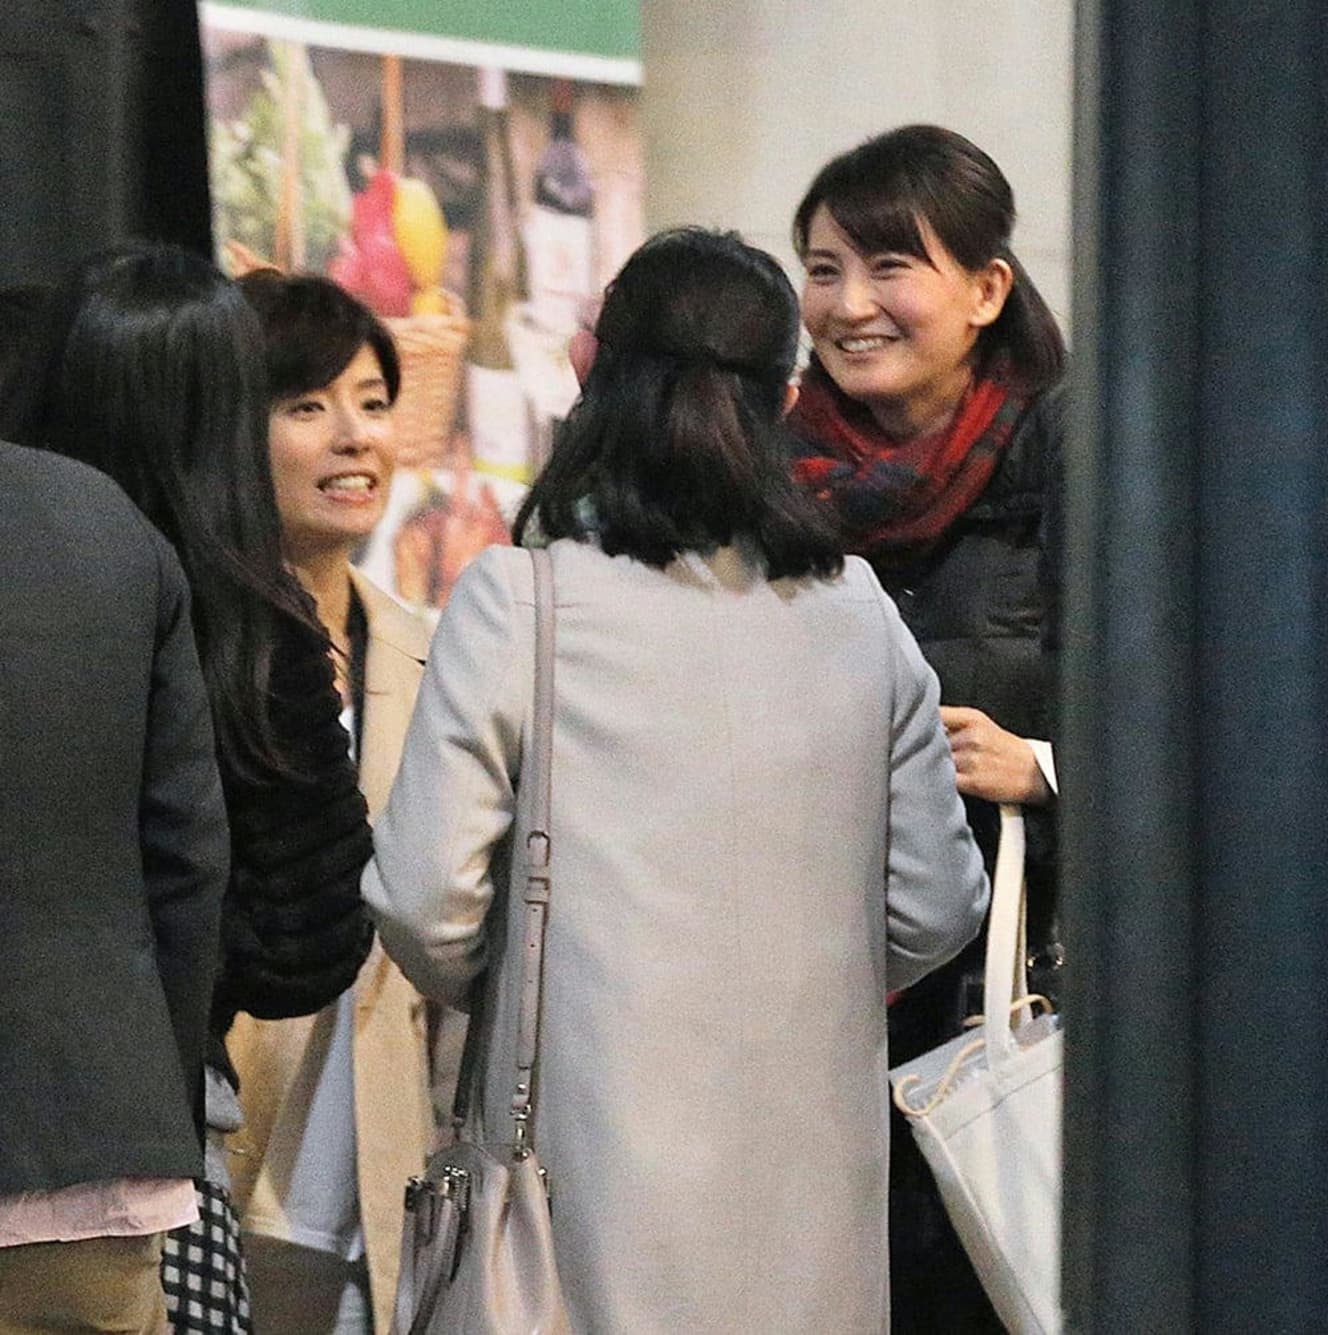 増田元アナの妻でNHKの廣瀬智美アナ（右から３人目）。井上あさひアナ（右）の顔も見える